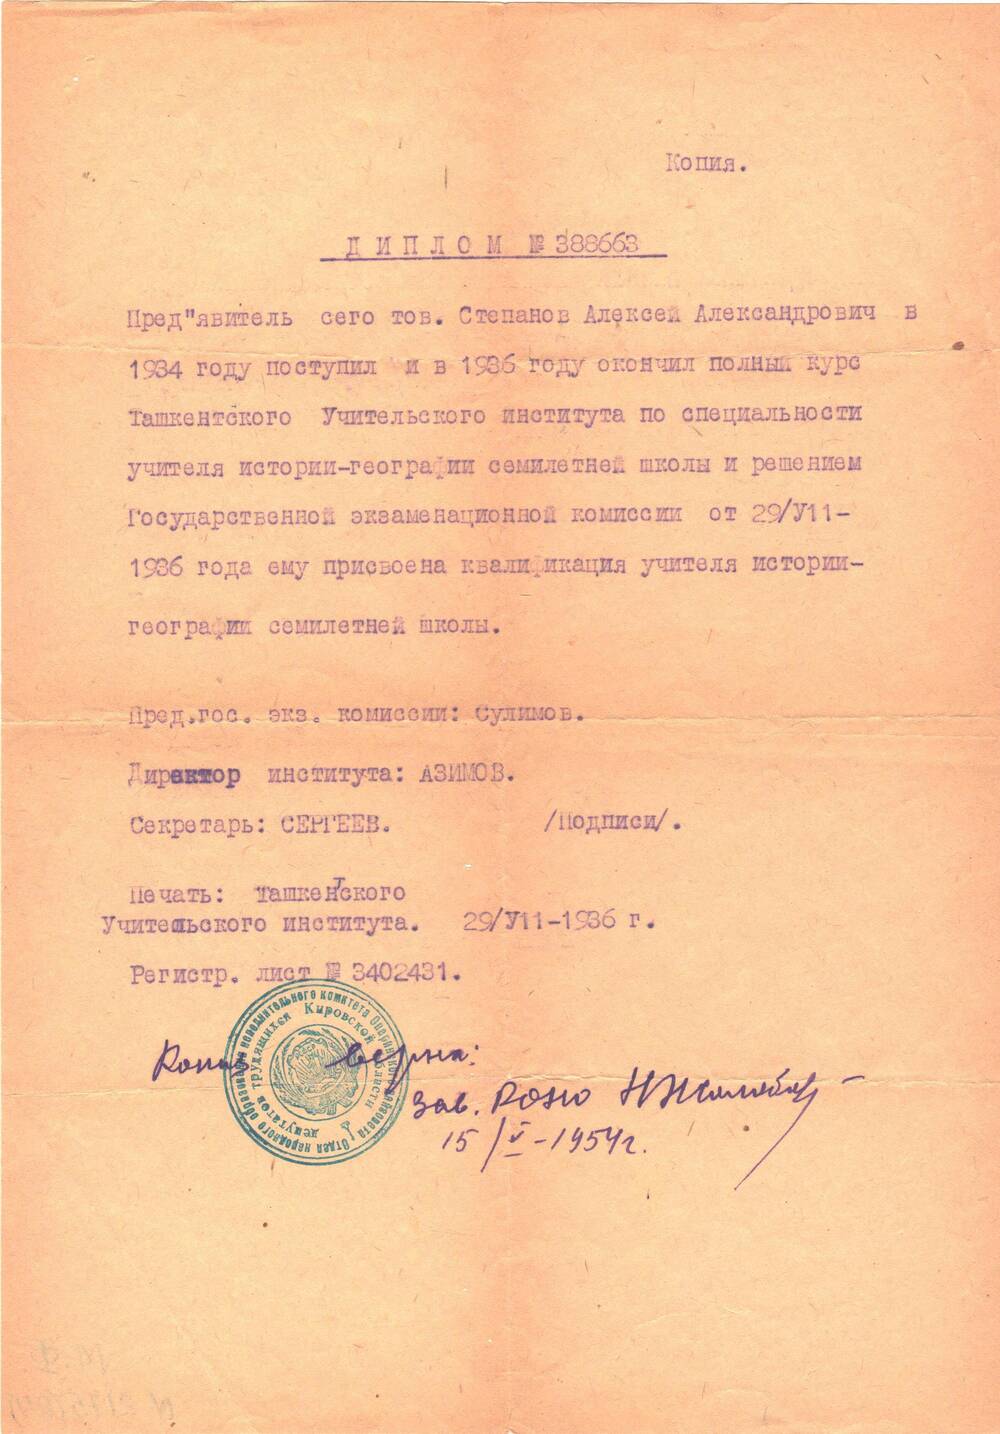 Диплом №388663(копия) Степанову Алексею Александровичу в том, что он поступил в 1934 году и окончил в 1936 году полный курс Ташкенсткого Учительского института по специальности учитель- географии семилетней школы.